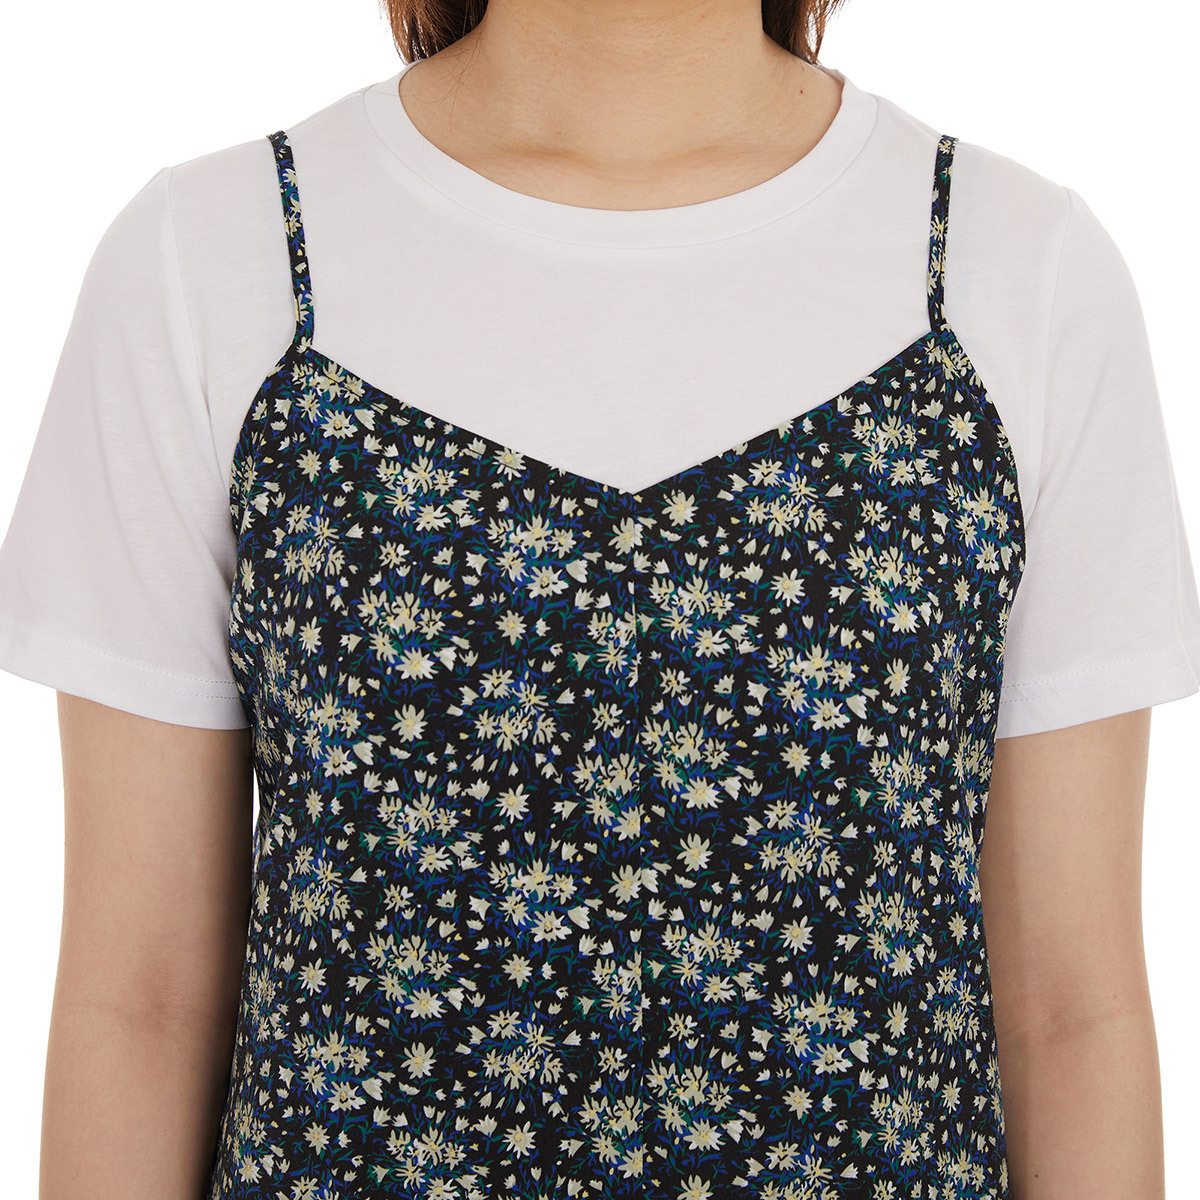 비지트 인 뉴욕 여성 원피스 티셔츠 세트 - 네이비블랙